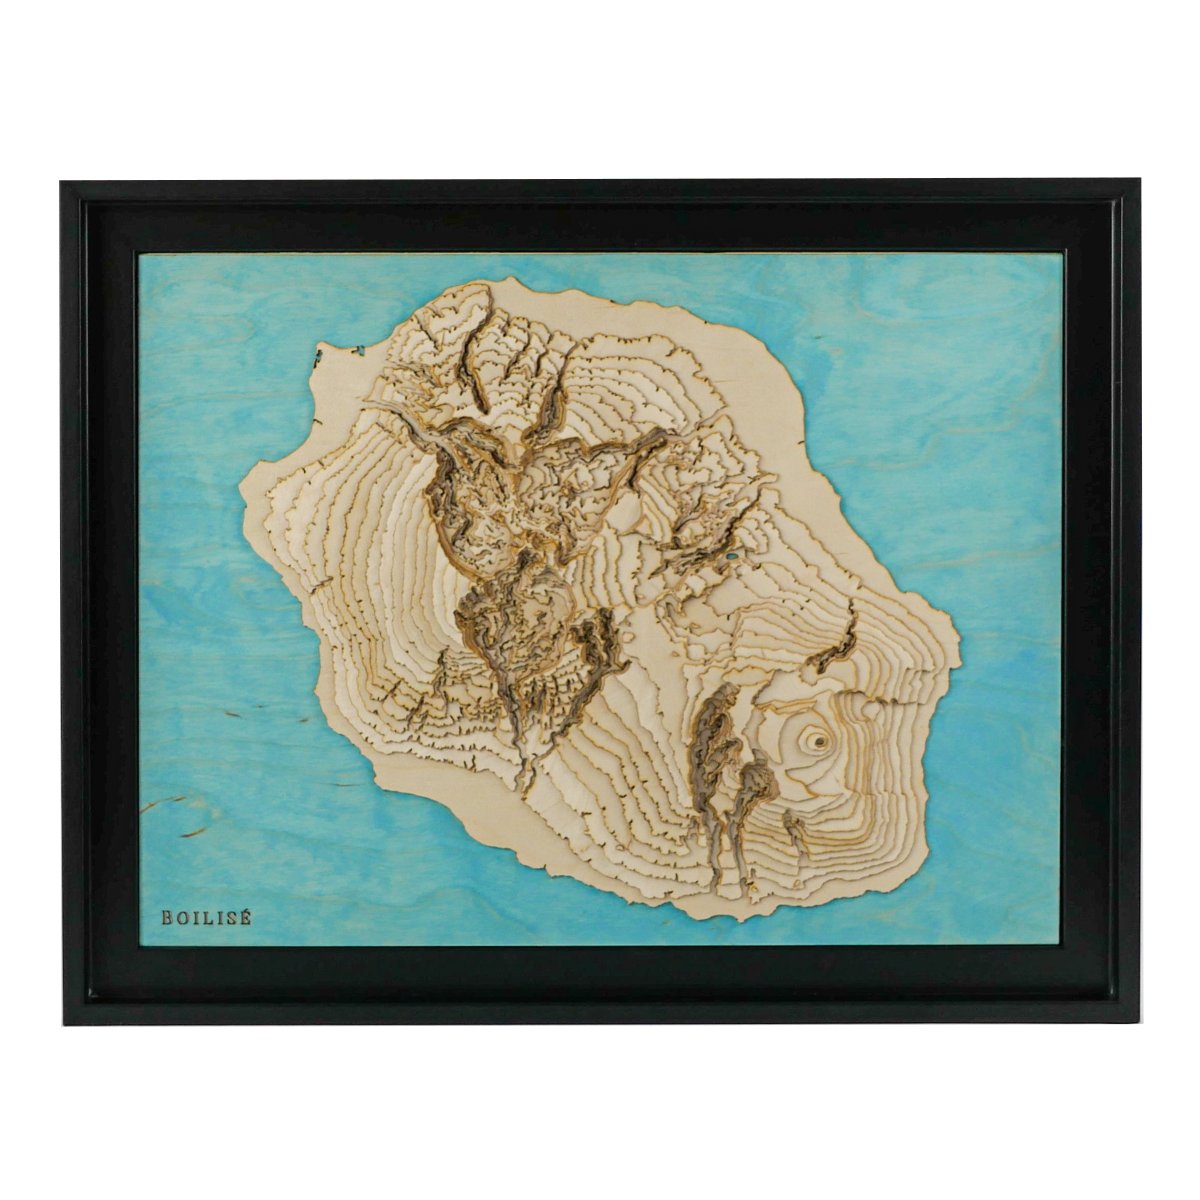 Carte topographique en bois de l'île de la Réunion, eau turquoise et caisse américaine noire